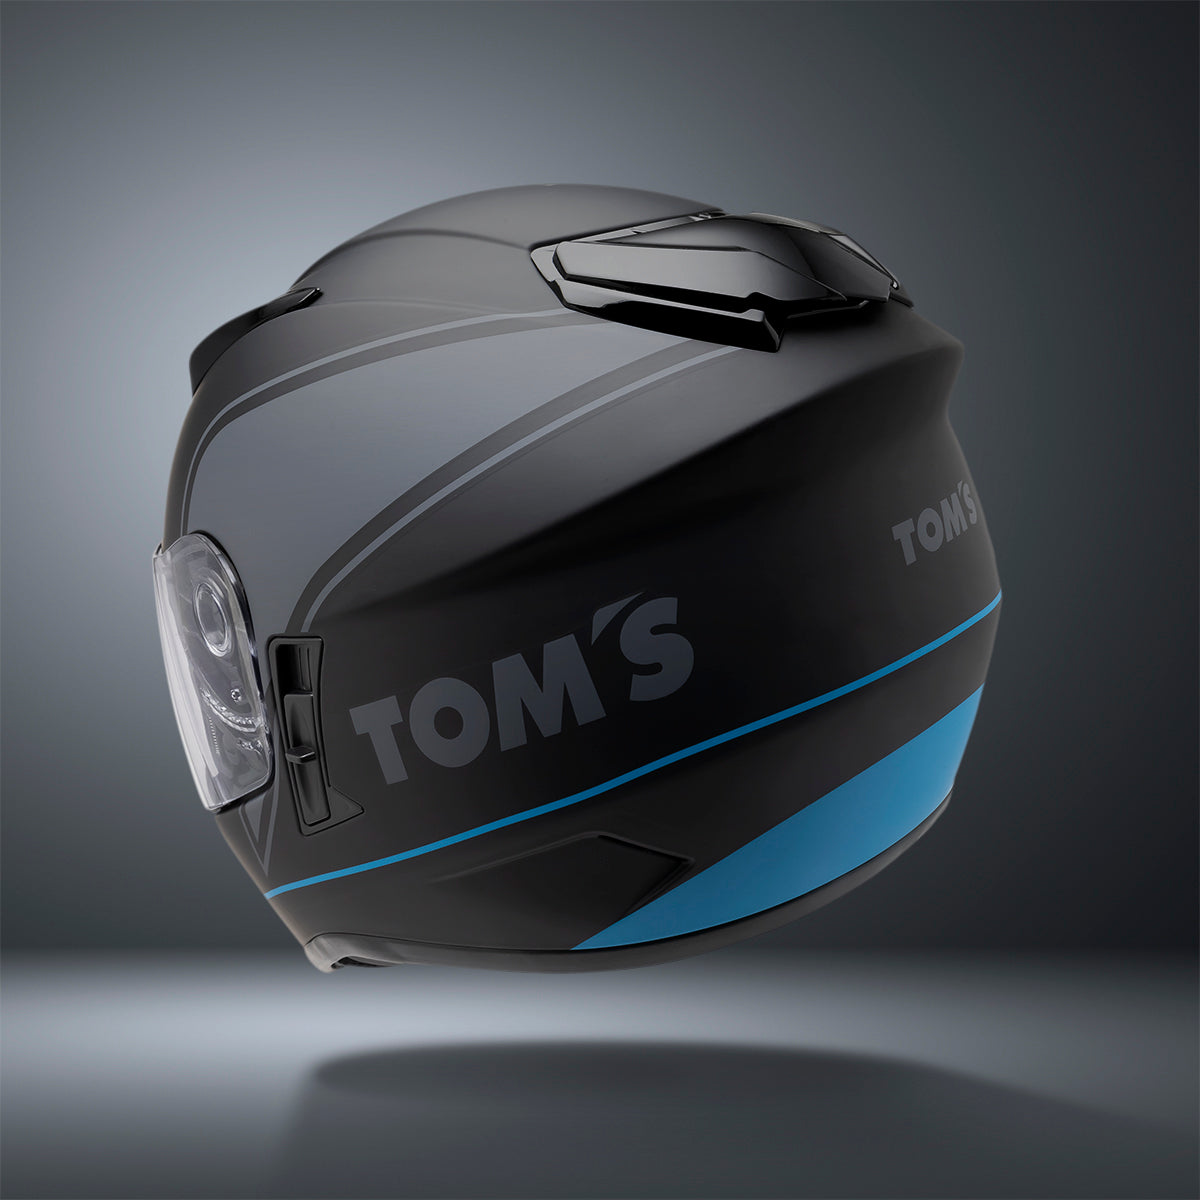 Toms Racing Helmet